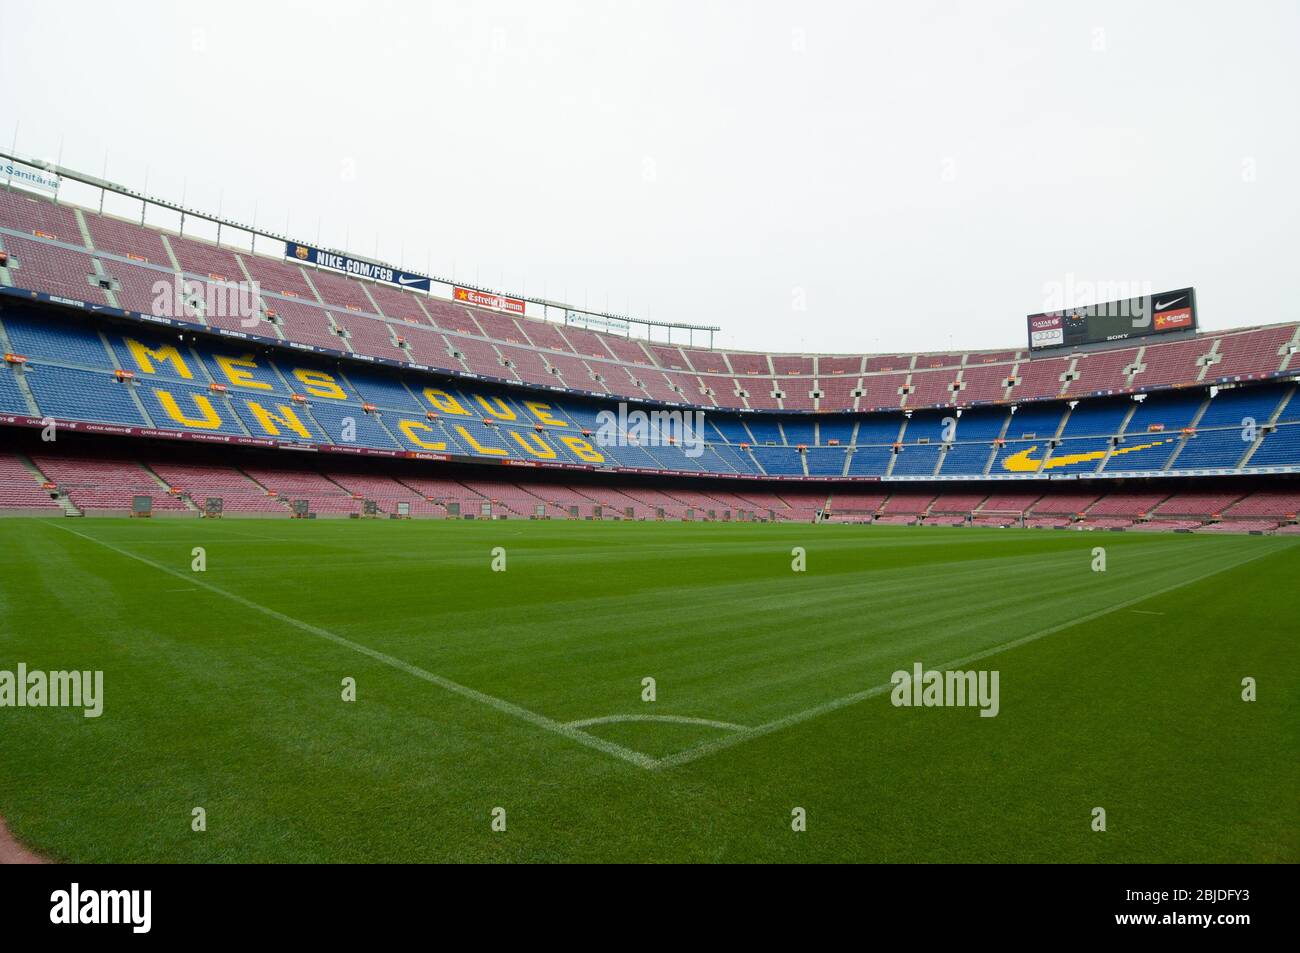 Barcellona, Spagna - 22 Settembre 2014: Nou Camp è il più grande stadio in Europa e la seconda più grande associazione allo stadio di calcio del mondo. Barce Foto Stock